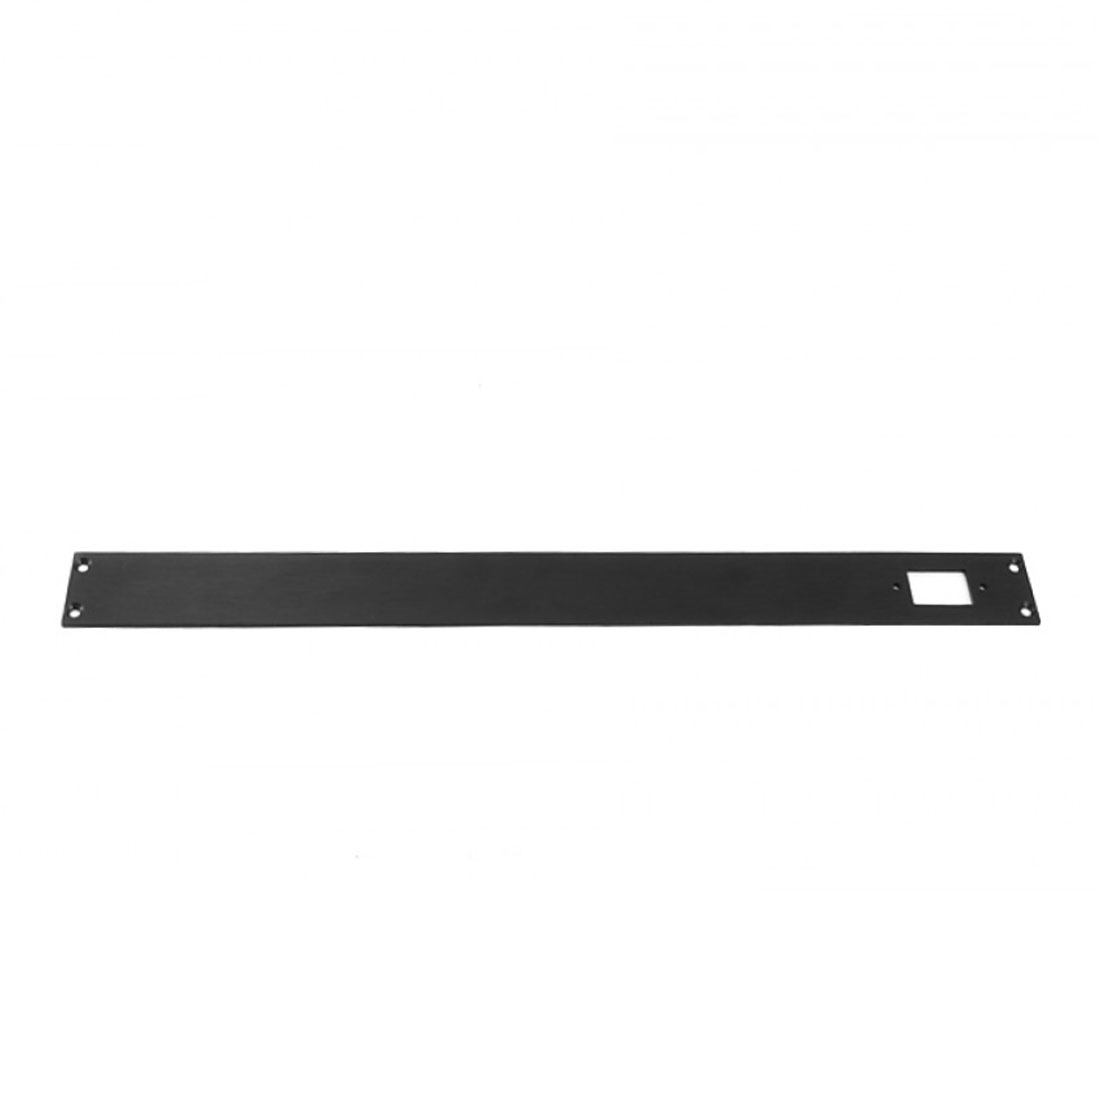 1NSLA01230N - 1U rack krabice s lištou, 230mm, 10mm - panel černý, AL víka